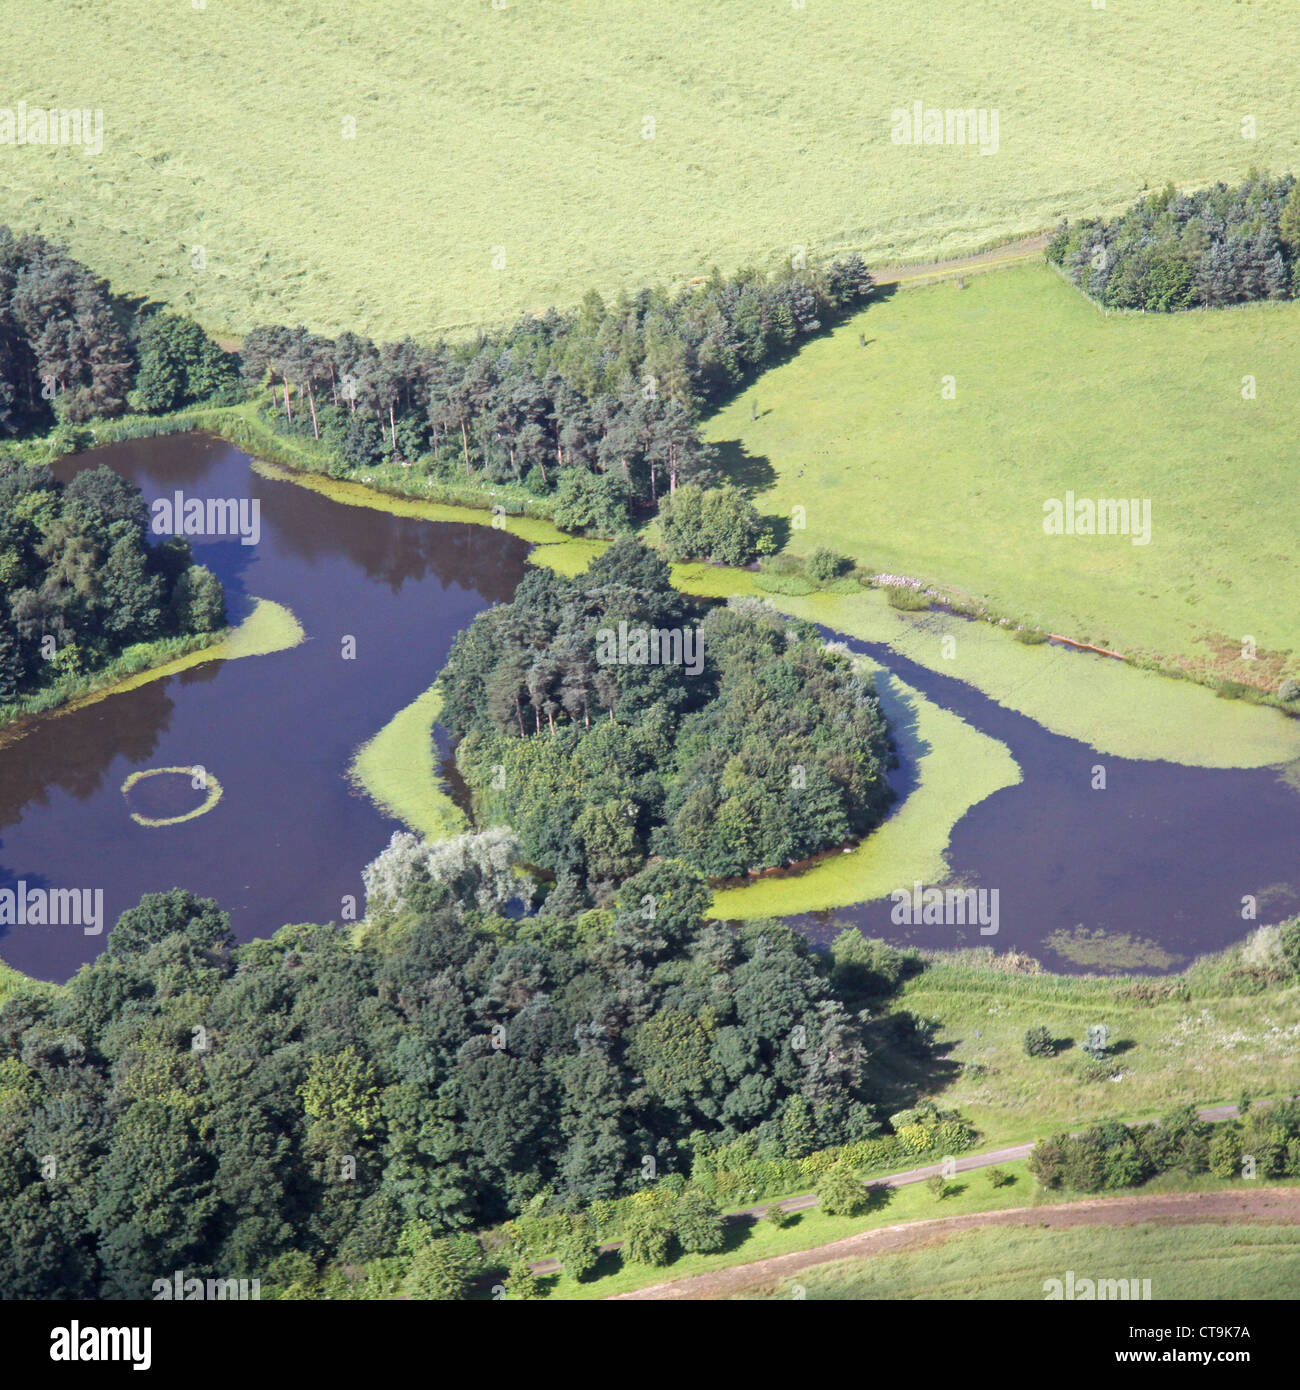 Vue aérienne d'une île au milieu d'un lac couverte d'arbres Banque D'Images